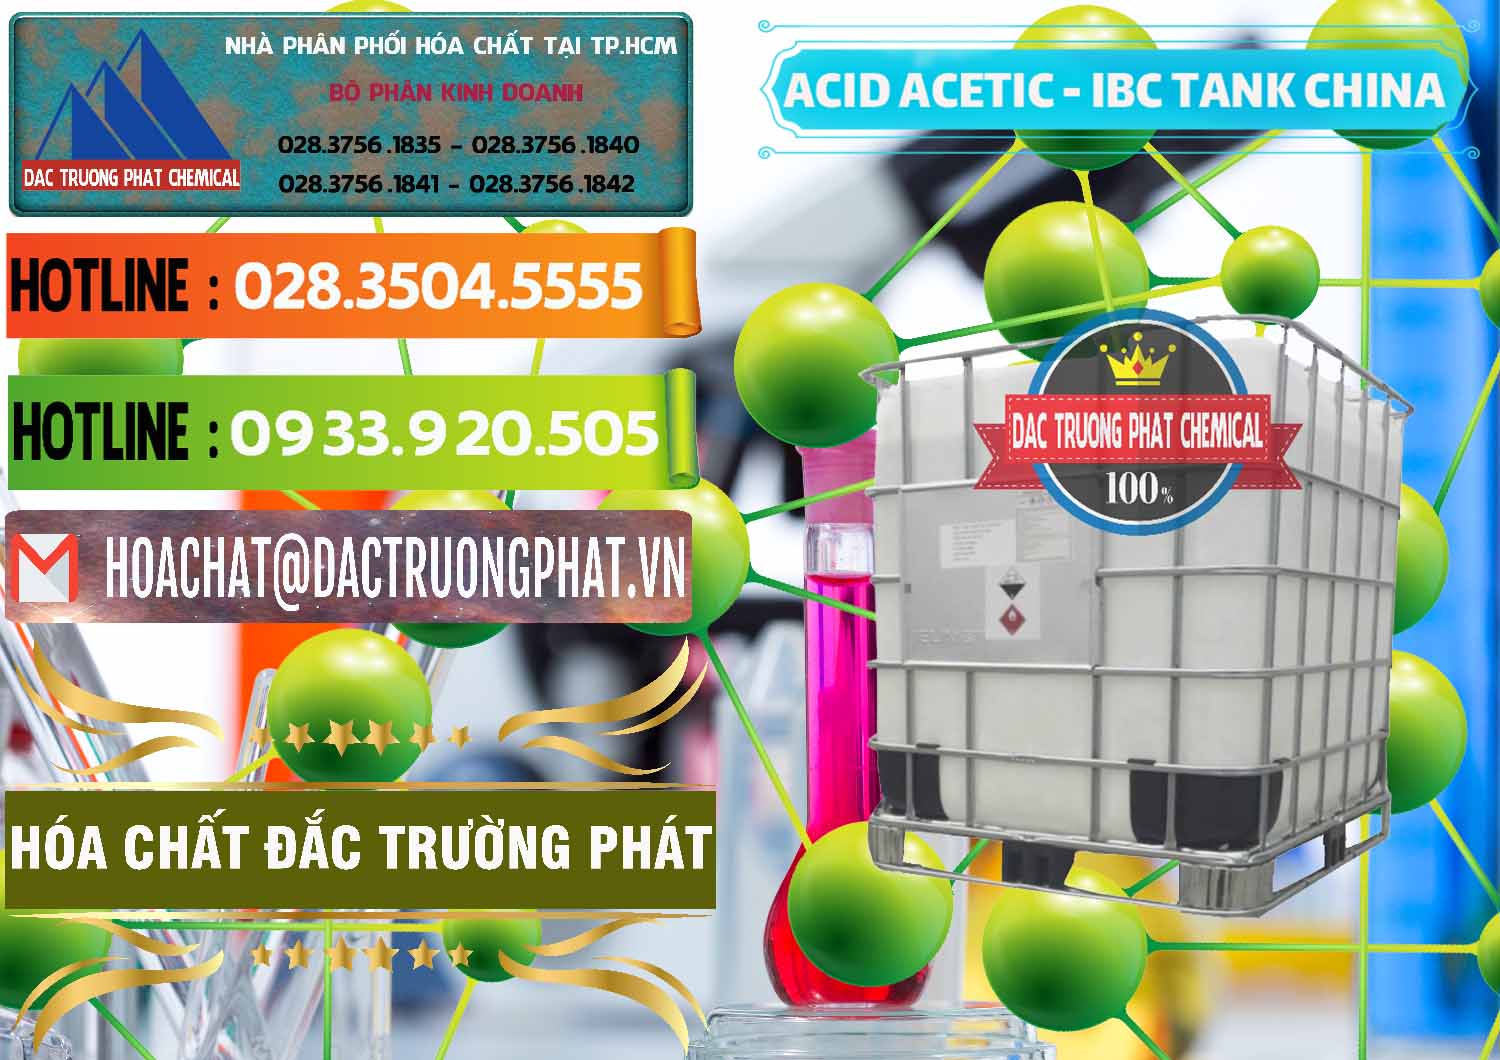 Chuyên bán ( cung ứng ) Acetic Acid – Axit Acetic Tank Bồn IBC Trung Quốc China - 0443 - Kinh doanh & cung cấp hóa chất tại TP.HCM - cungcaphoachat.com.vn